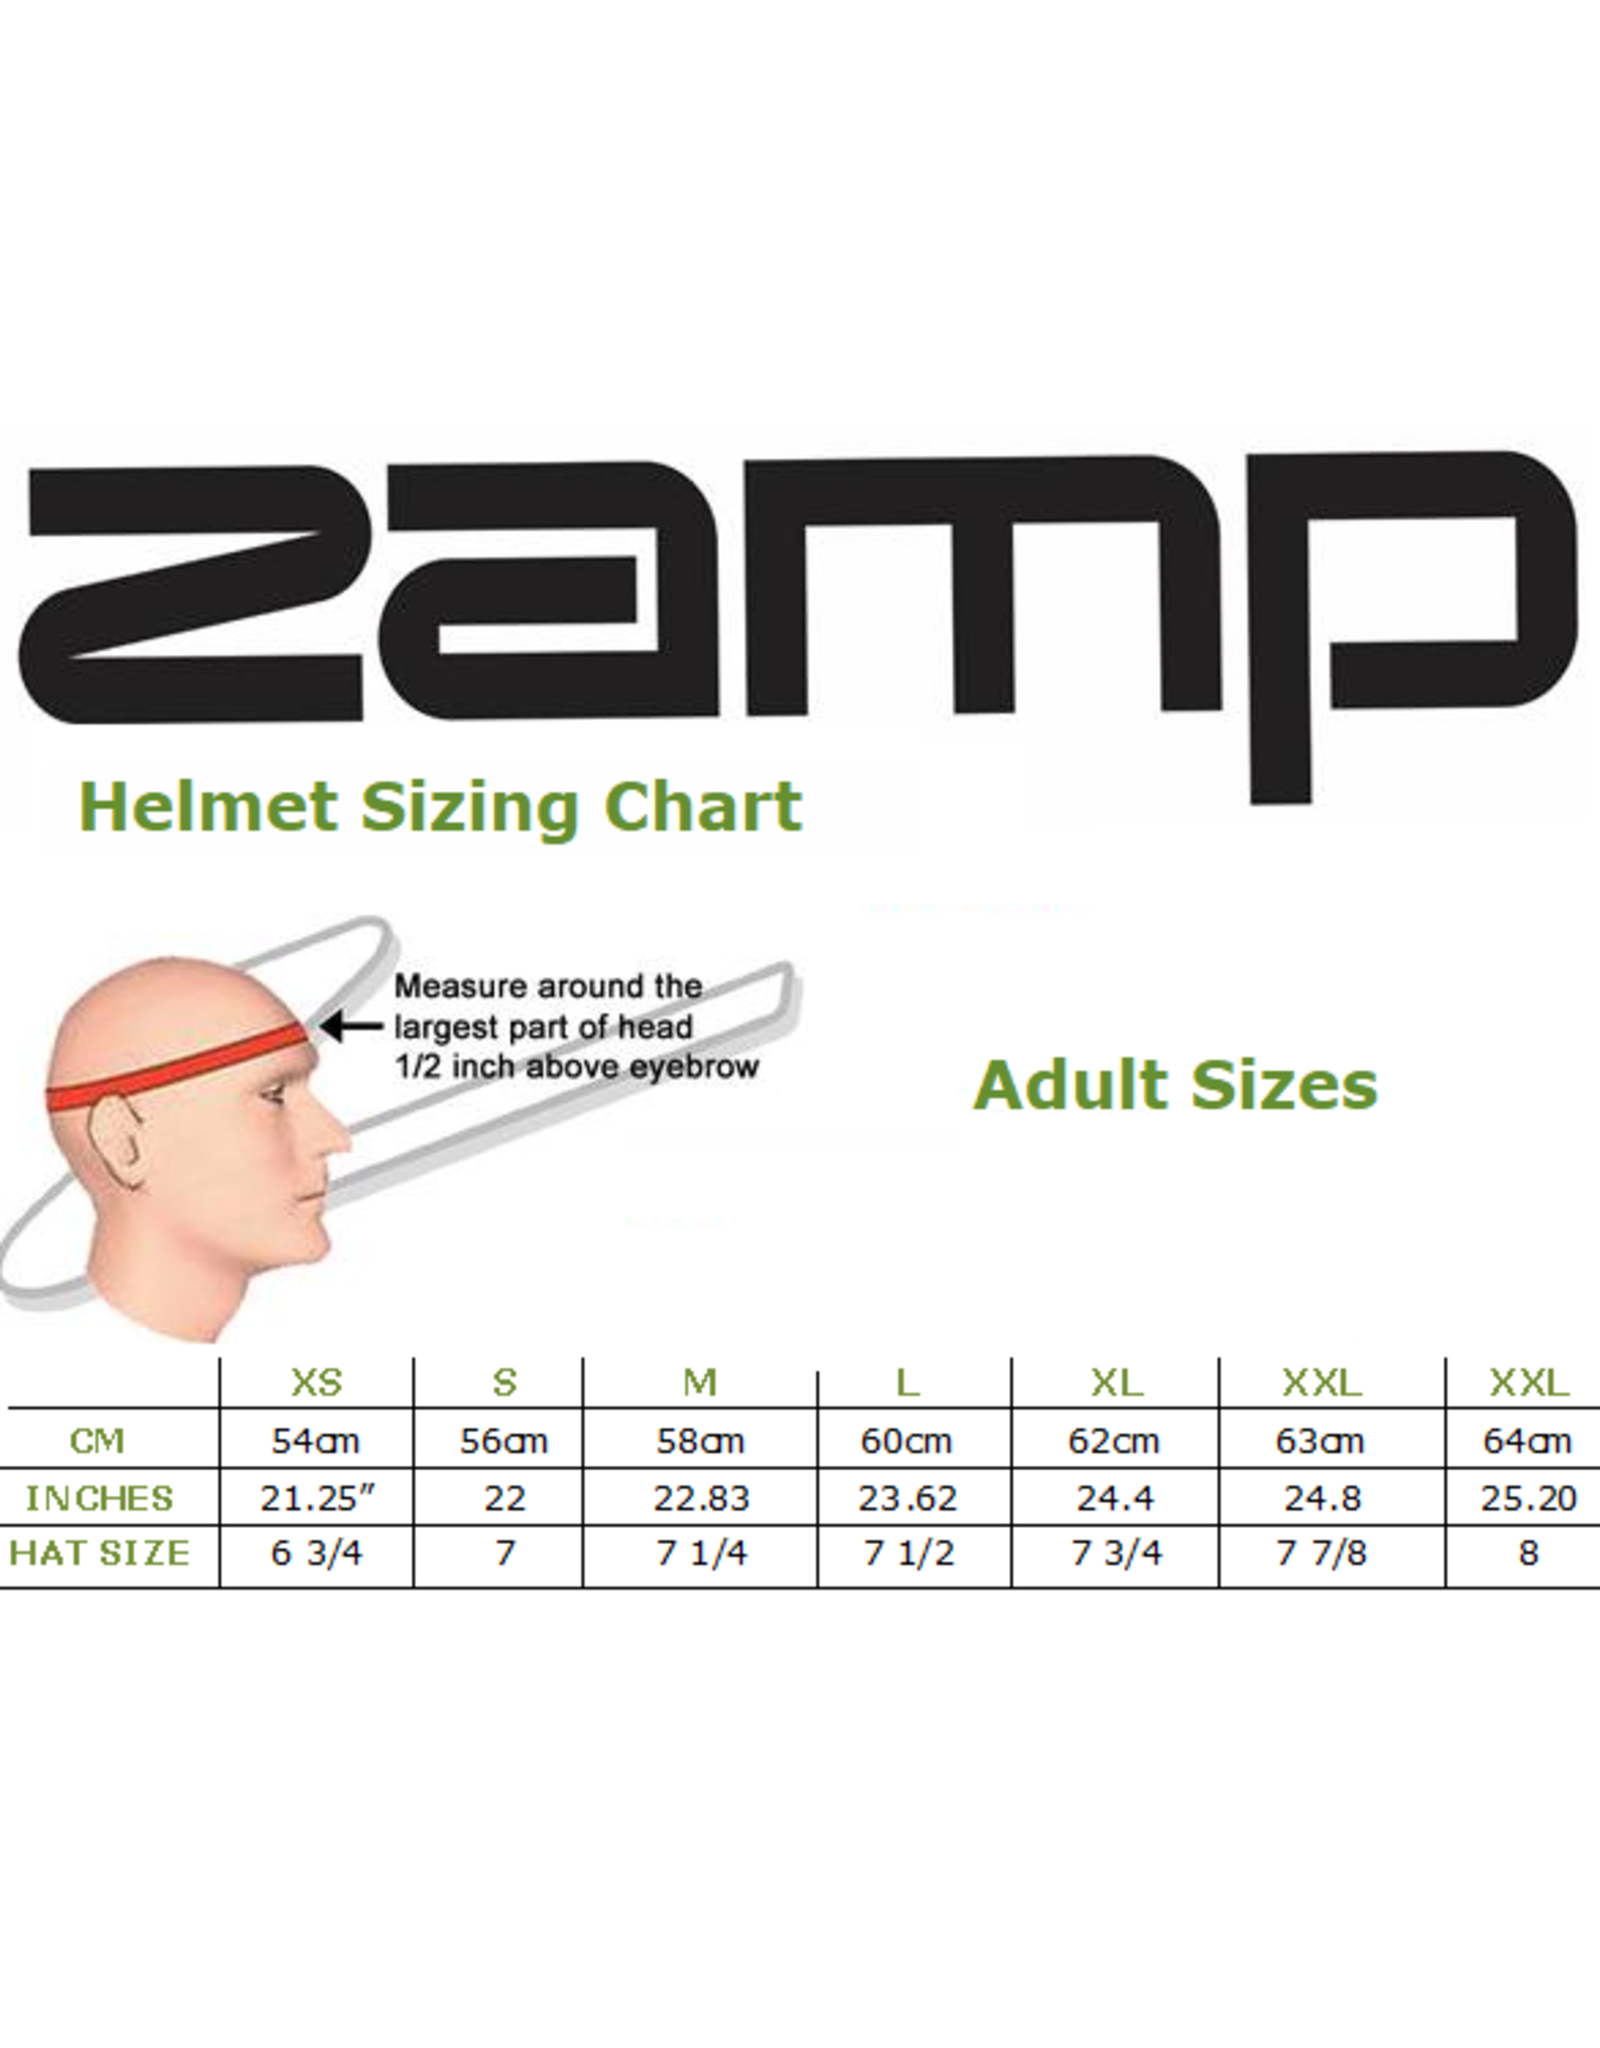 Zamp Zamp ZR-72 Zwart/ rood / oranje(FIA-8859 / SNEL 2020)